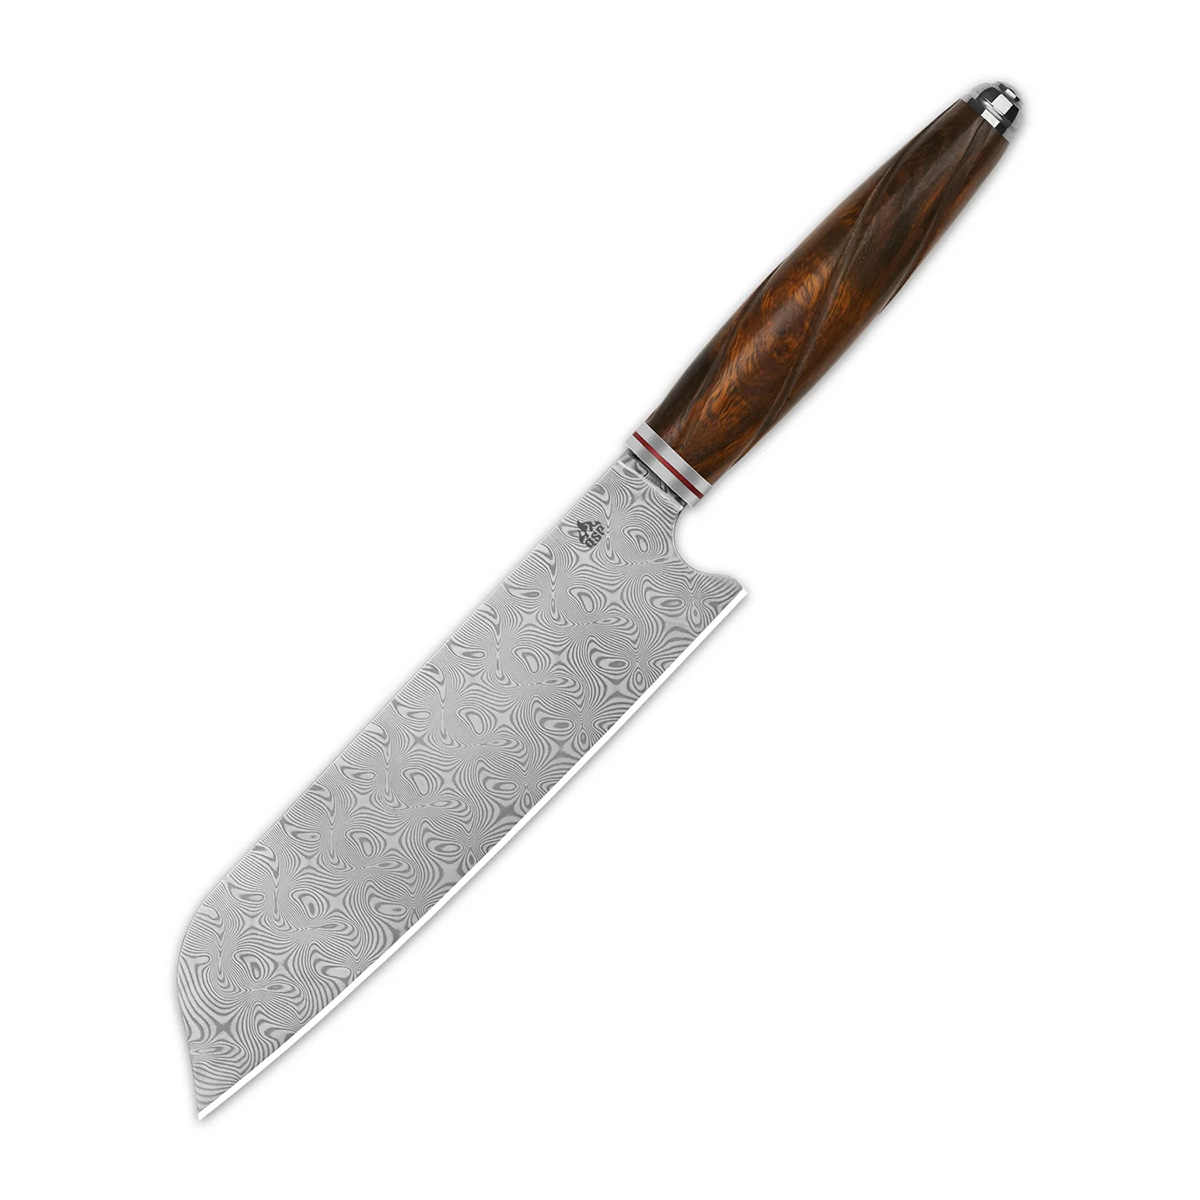 

Поварской кухонный нож Сантоку QSP Mulan Series, сталь дамаск, рукоять дерево айронвуд